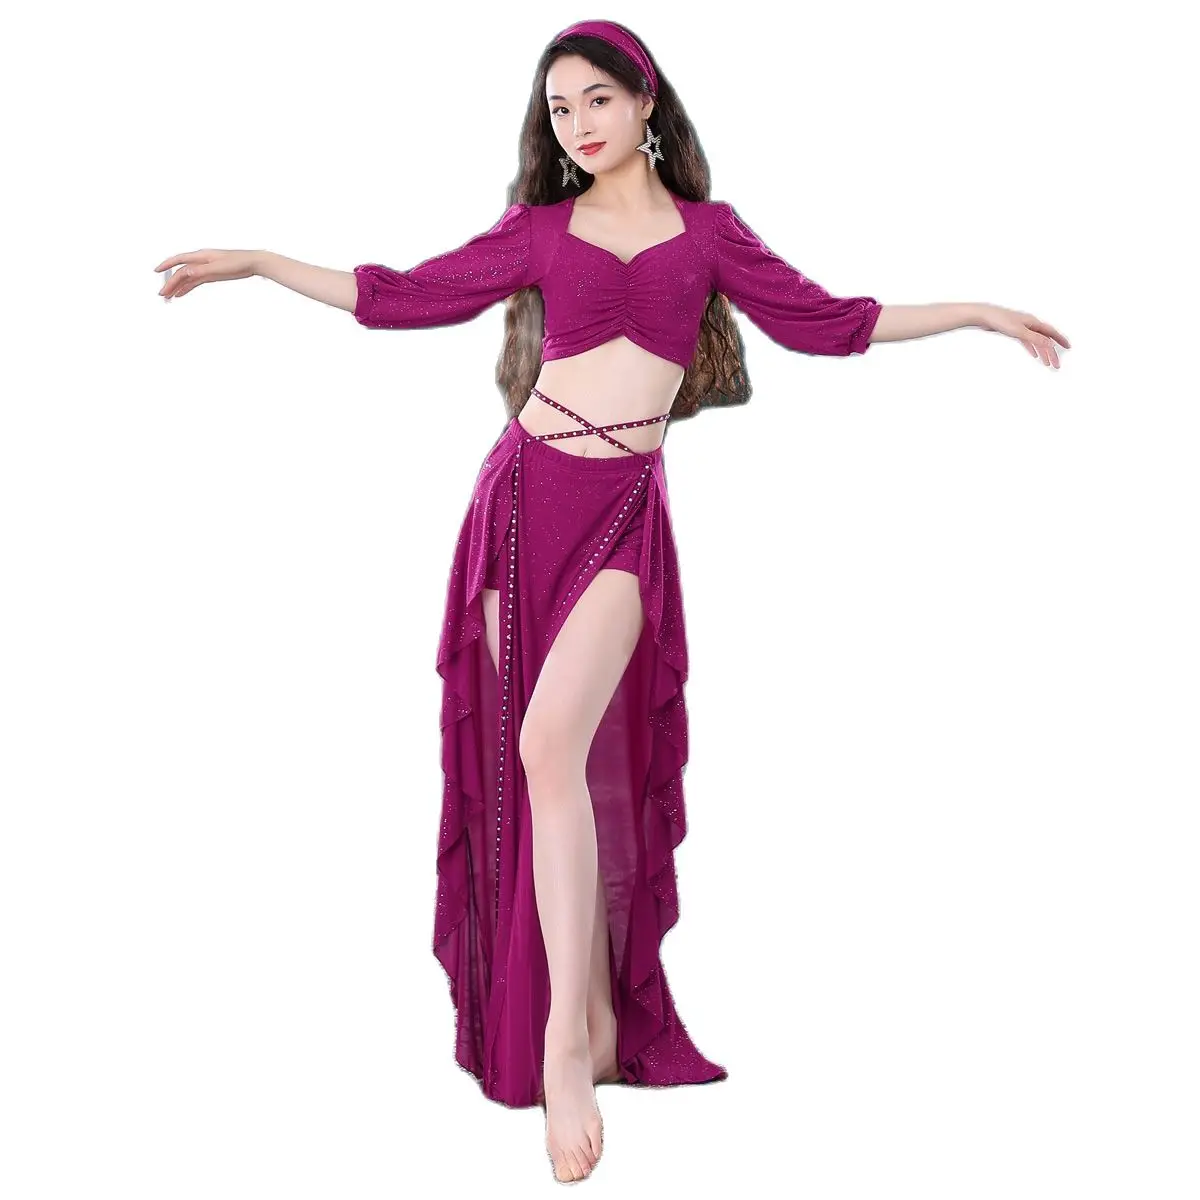 

Горячая Распродажа мультфильм принцесса косплей индийский танцор сексуальное платье Костюм Хэллоуин девушка замок карнавал Вечерние